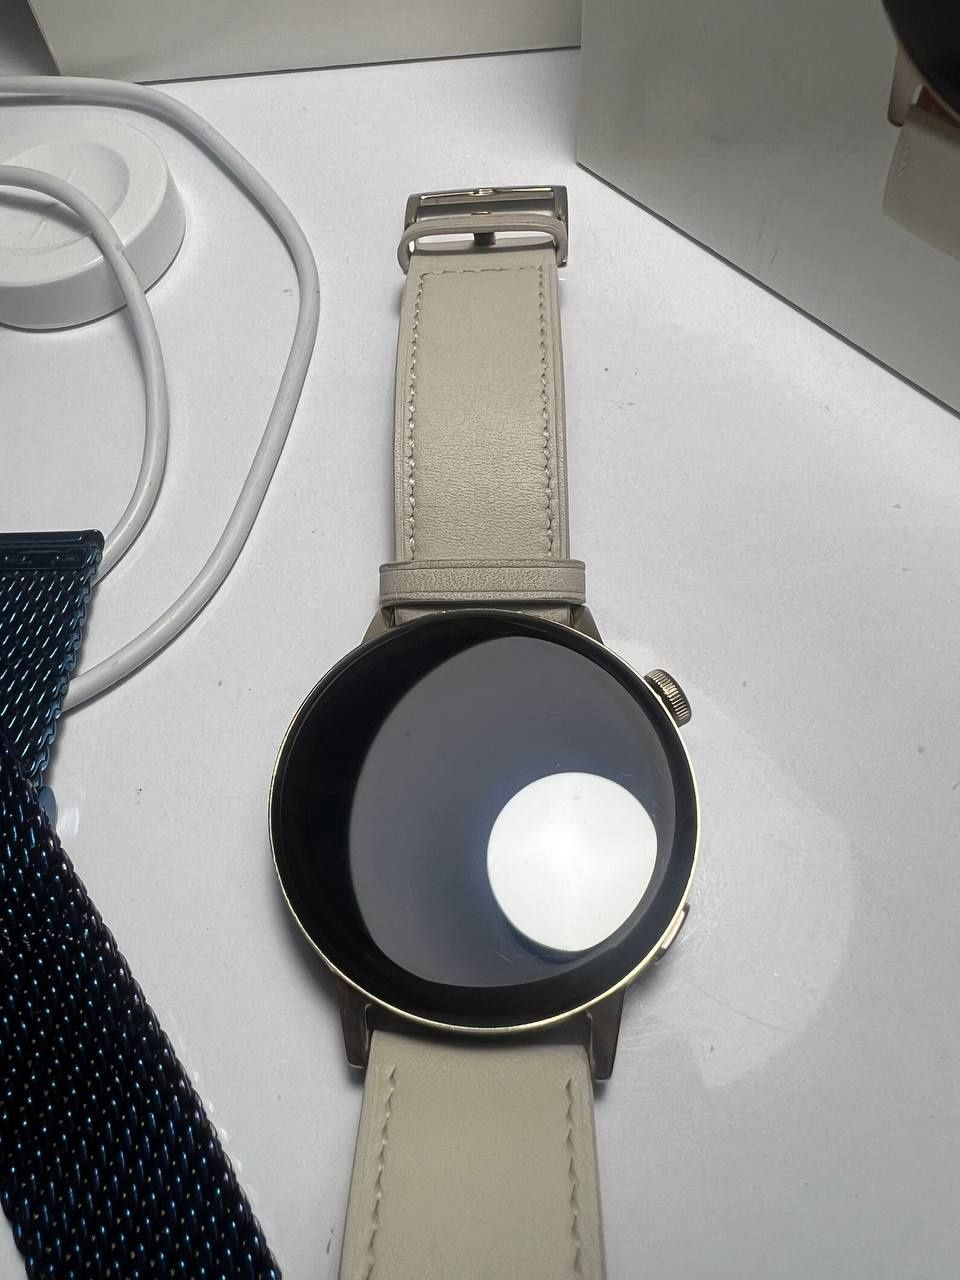 Huawei watch gt3 42mm